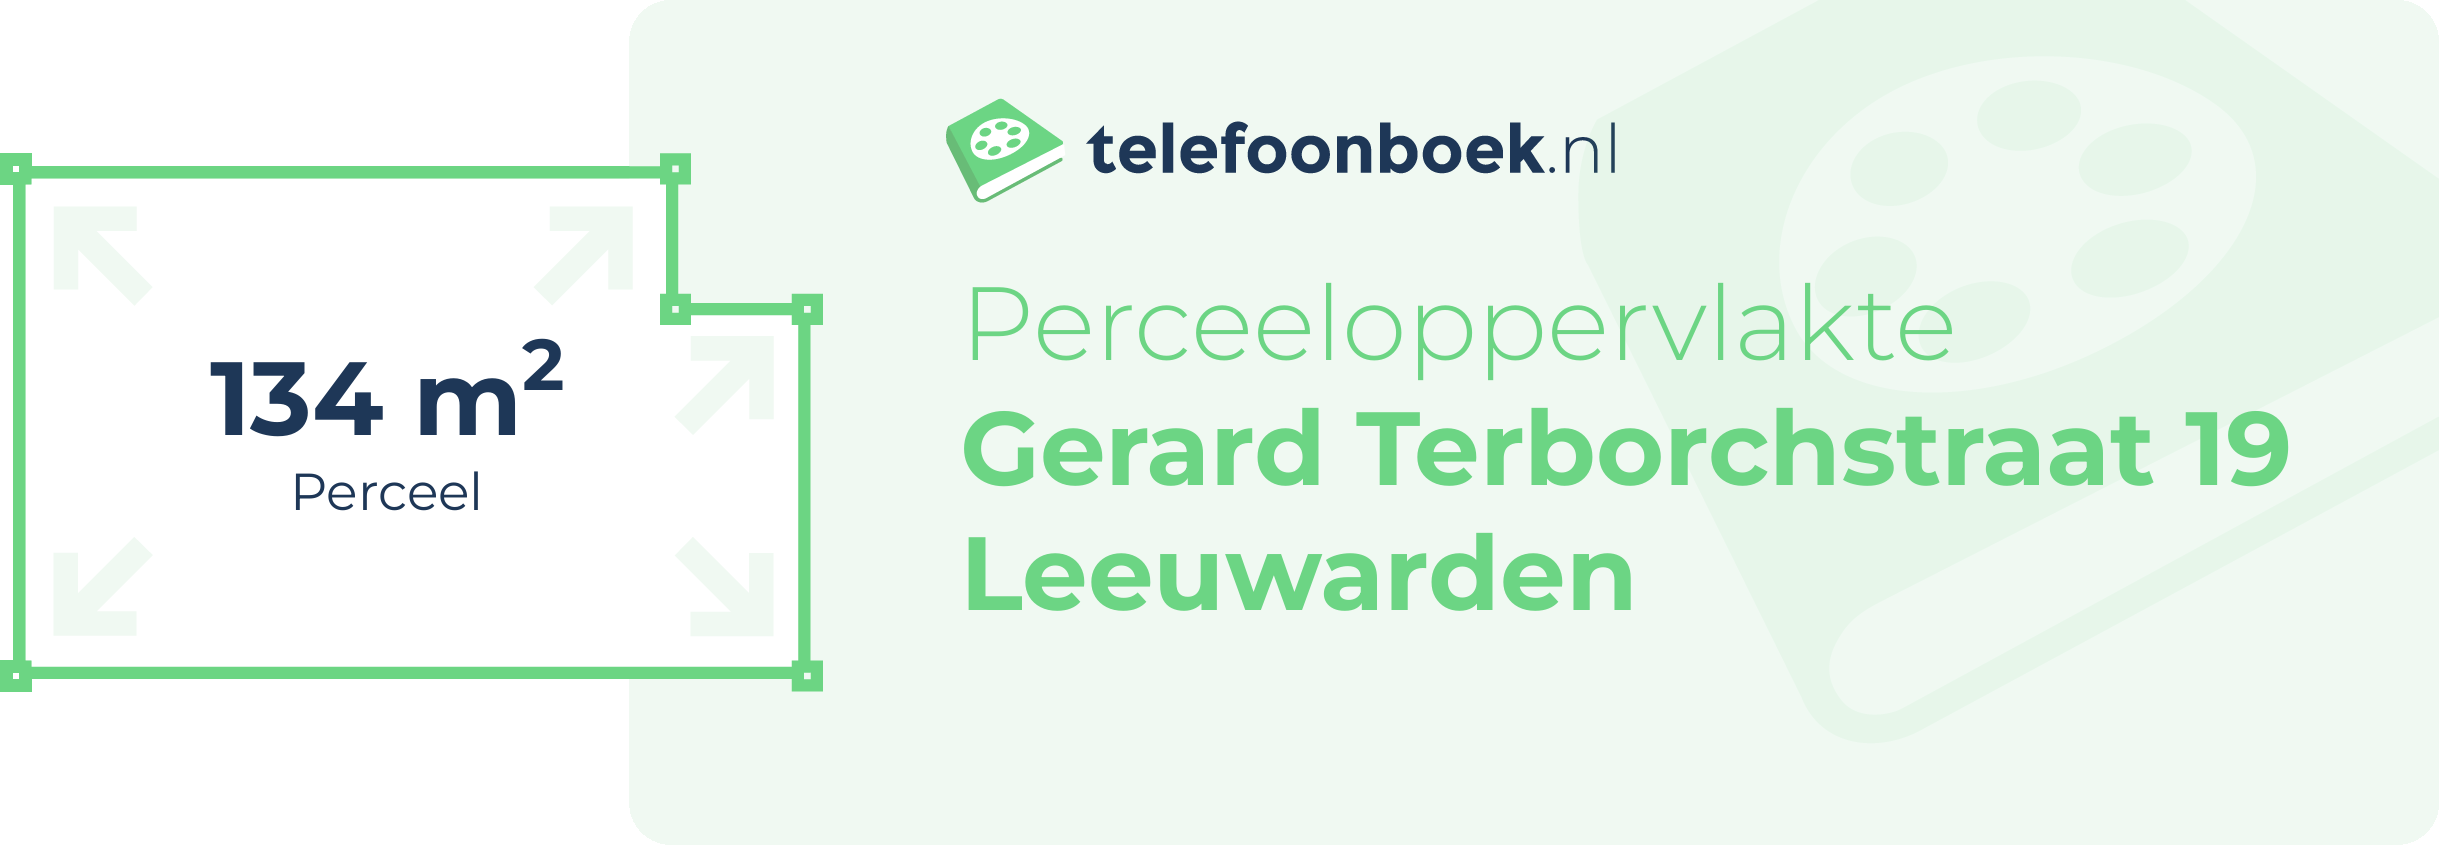 Perceeloppervlakte Gerard Terborchstraat 19 Leeuwarden